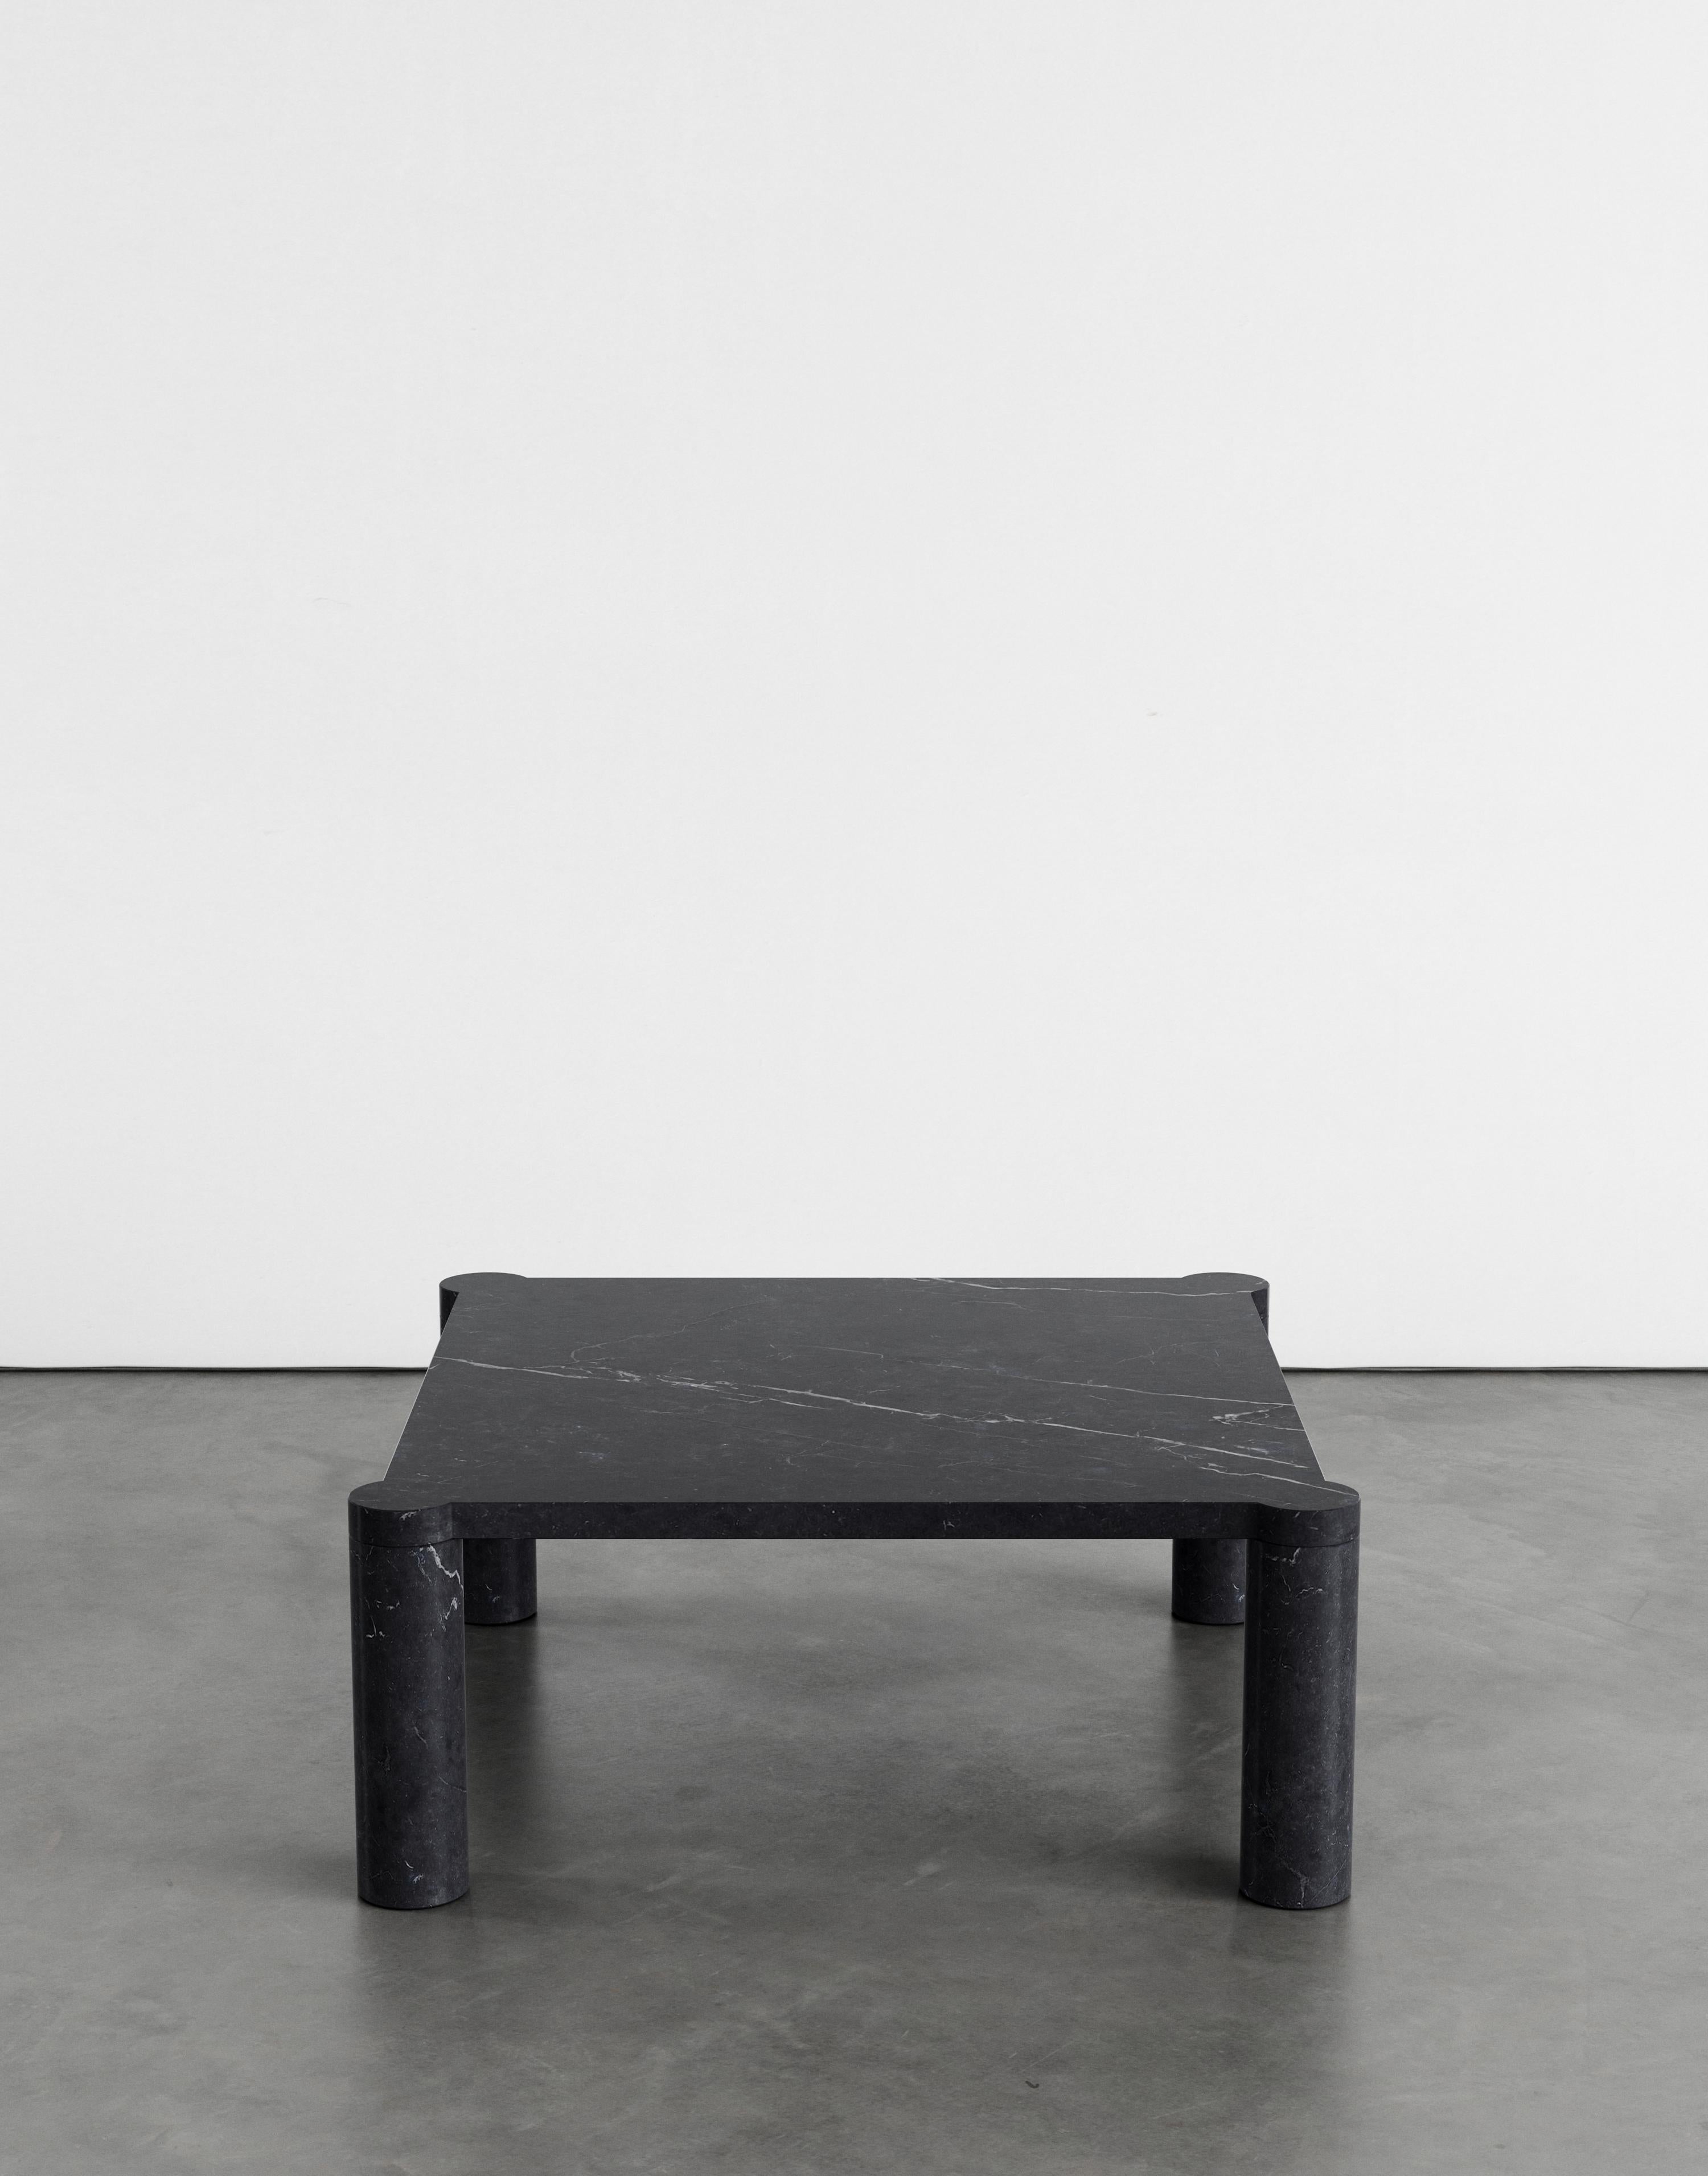 Table basse Alessio 80 par Agglomerati 
Dimensions : D 80 x L 80 x H 33 cm 
Matériaux : Marquina noir. Disponible dans d'autres pierres. 

Agglomerati est un studio basé à Londres qui crée des meubles en pierre distinctifs. Fondé en 2019 par le